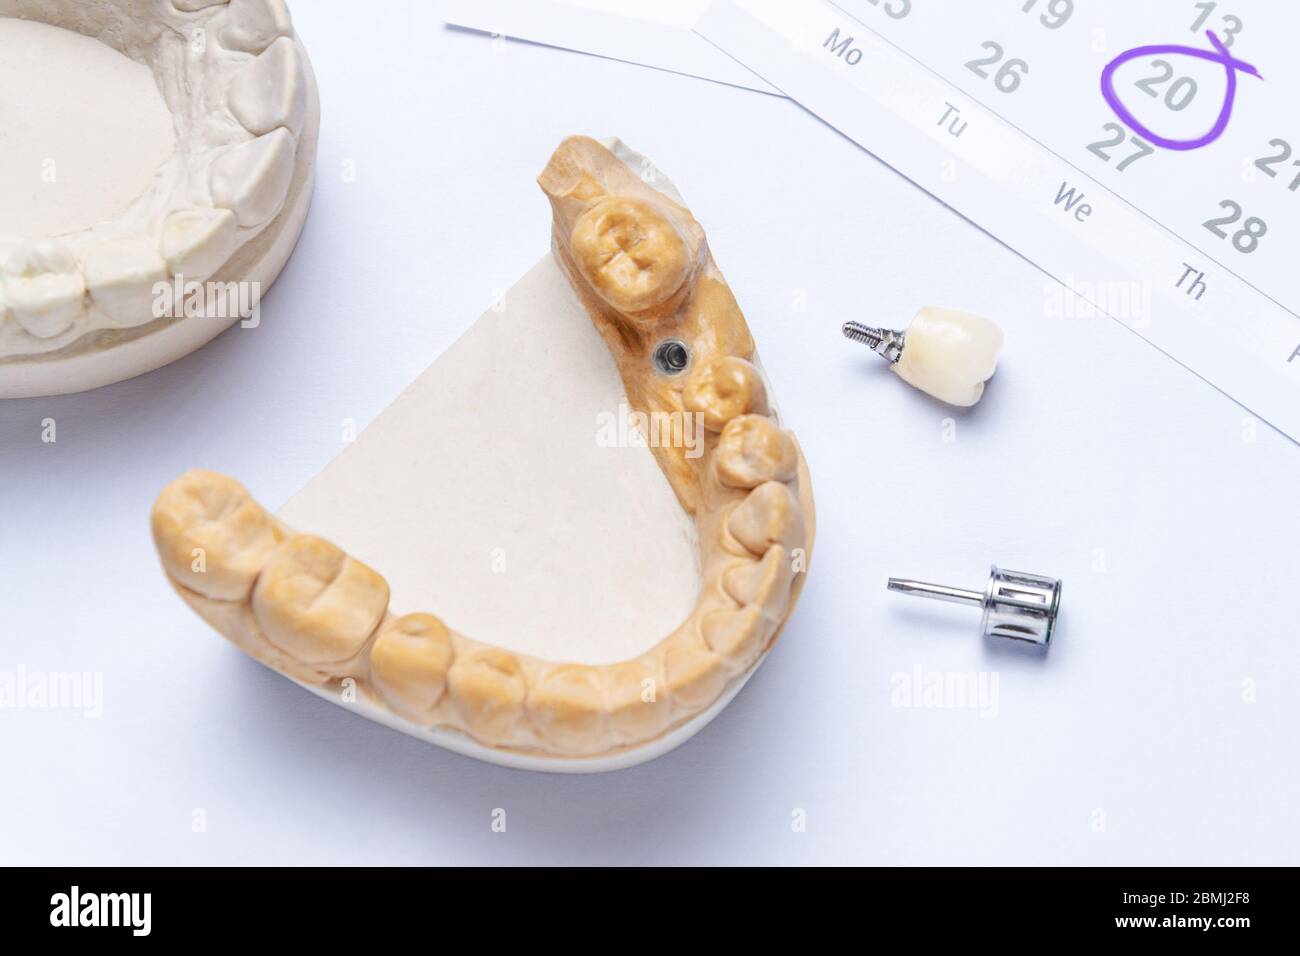 Ein Zahnimplantat mit einer Keramikkrone und einem Zahninstrument liegt auf einem weißen Hintergrund, im Kalender oben rechts, der einen Besuch beim Zahnarzt anzeigt Stockfoto